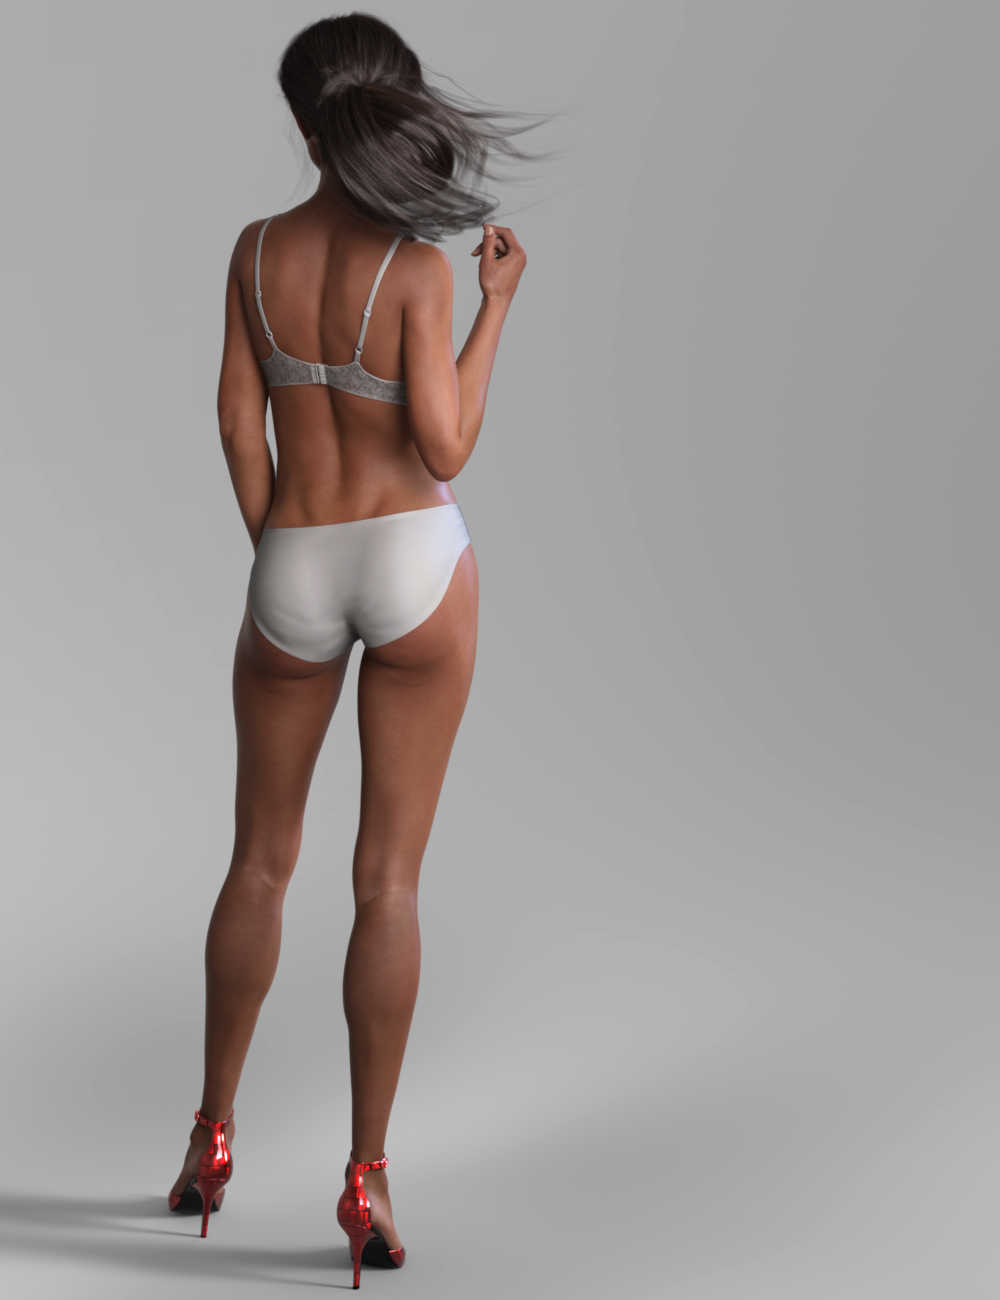 RY Felina for Victoria 8 by: Raiya, 3D Models by Daz 3D